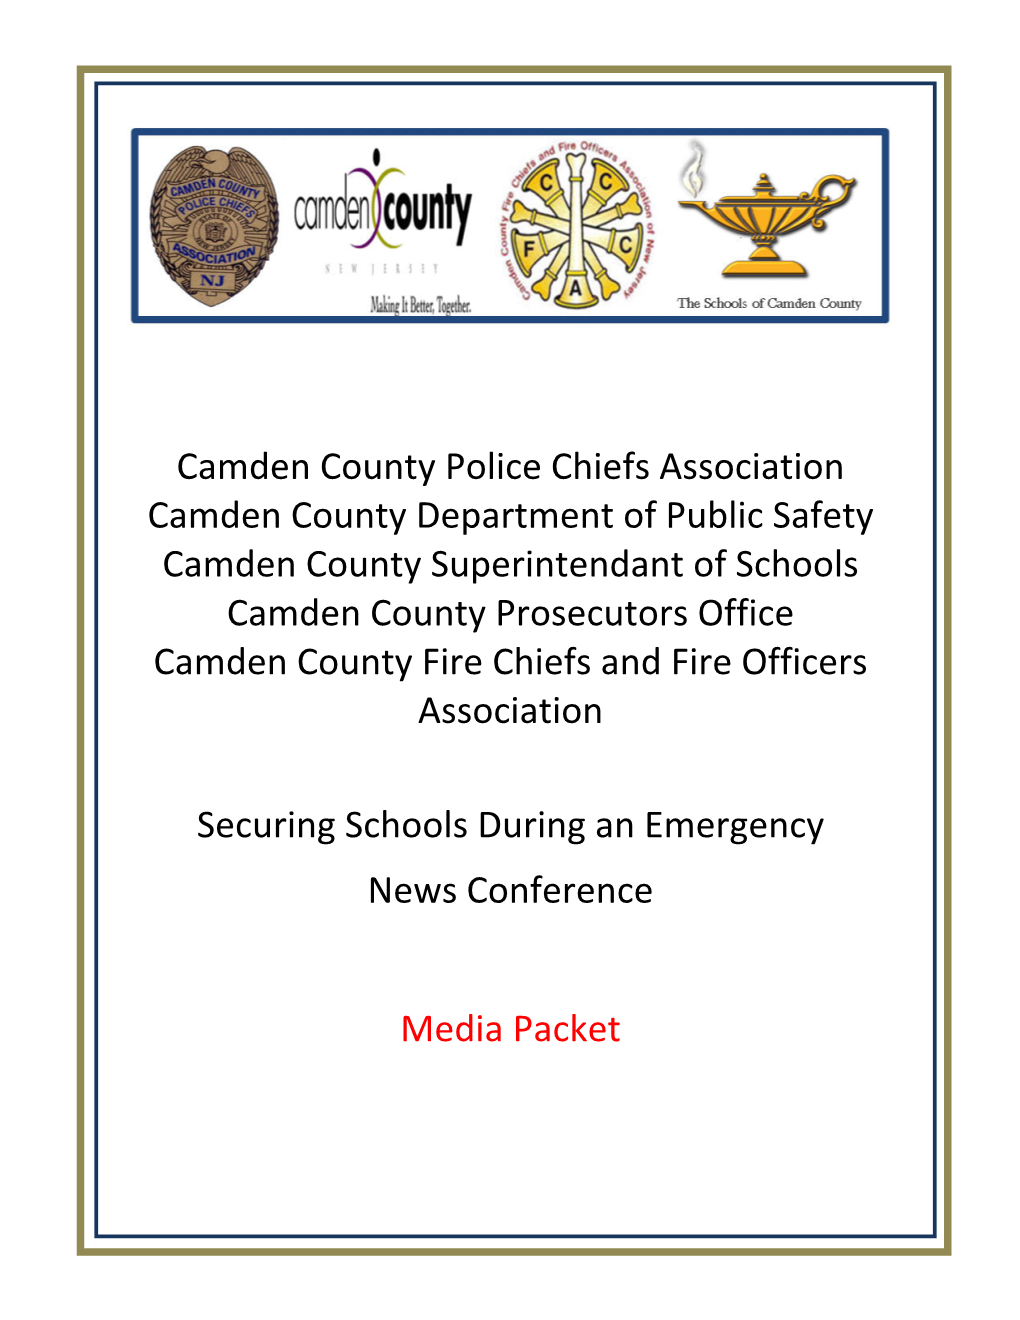 Camden County Police Chiefs Association Camden County Department of Public Safety Camden County Superintendant O